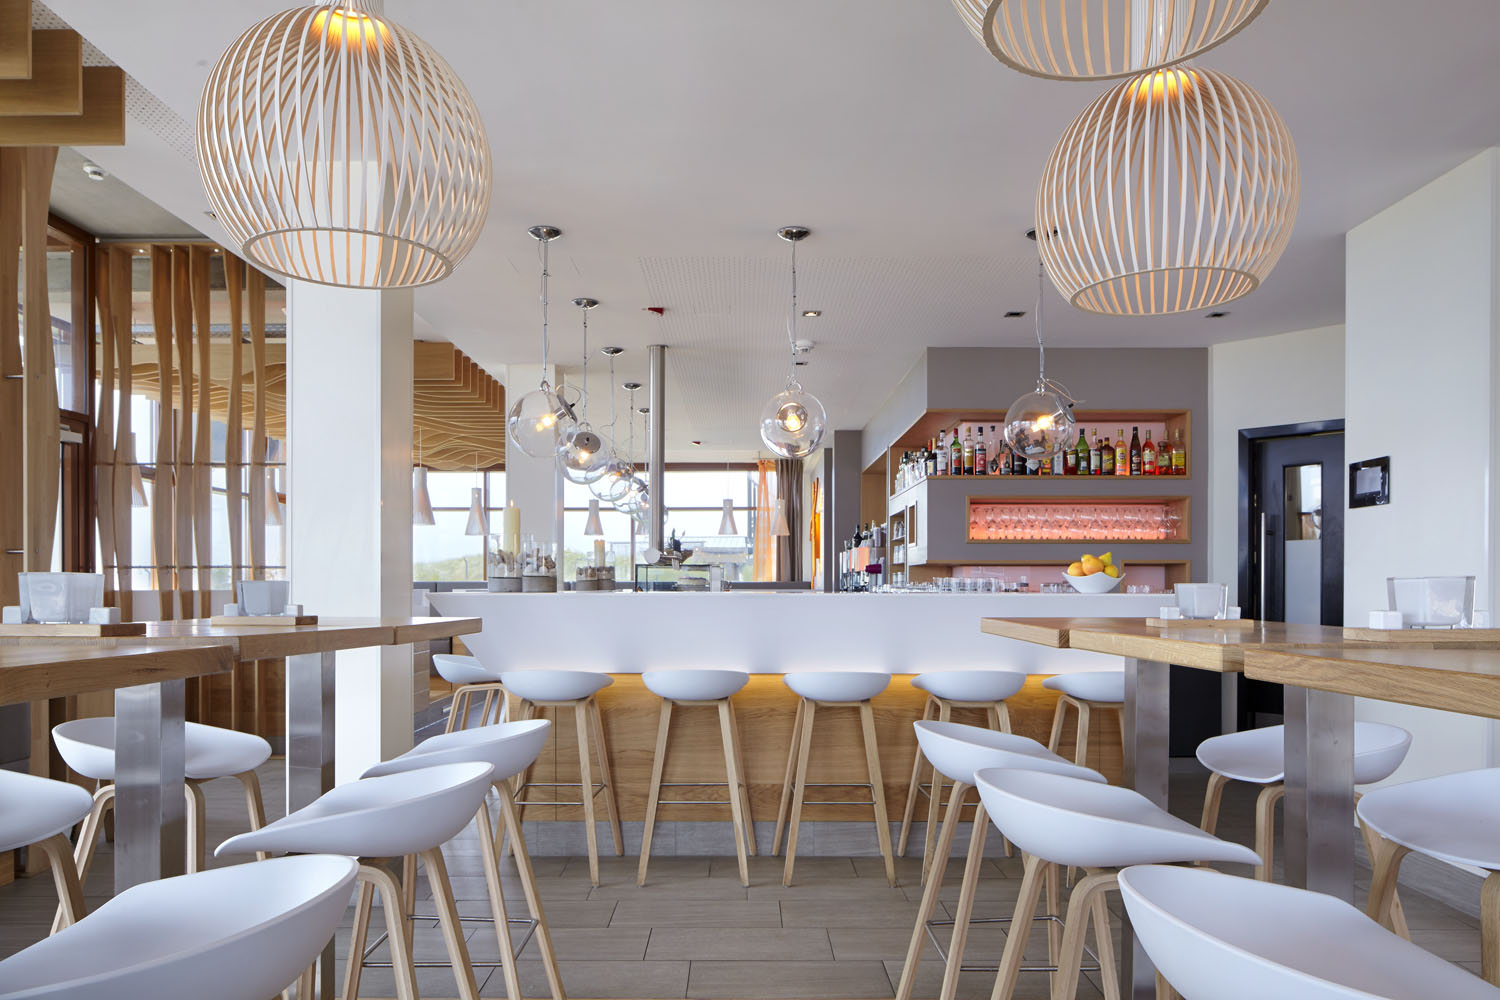 Das Restaurant „Deichkind“ mit einem Mix aus Bistro, Bar, OpenAir-Lounge und Coffeeshop.
